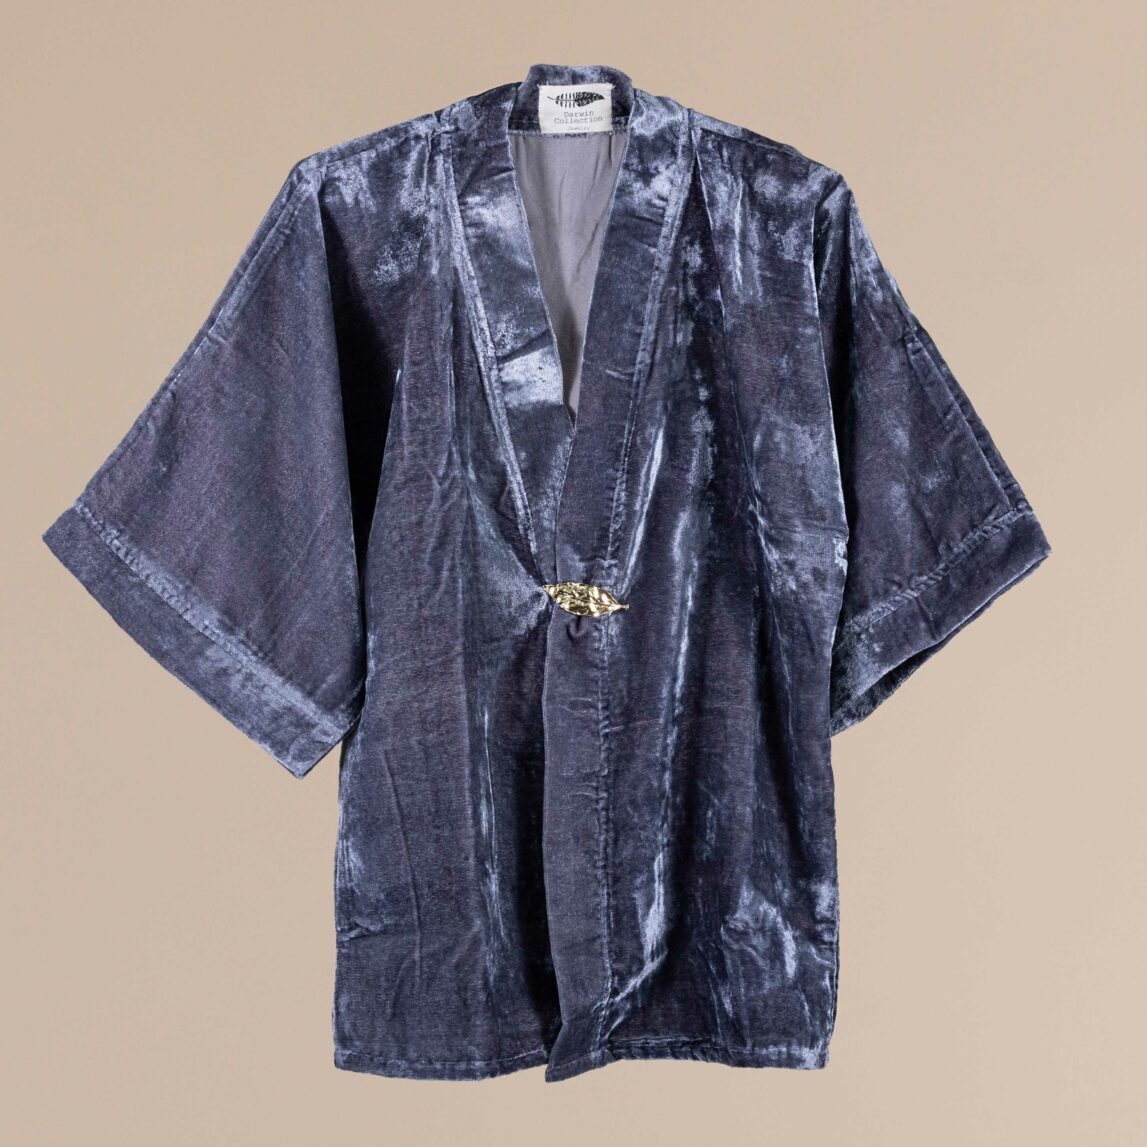 El Kimono de invitada de terciopelo Lindsay gris será el complemento perfecto para hacer brillar tu look de invitada. Marca tendencia en tu próximo evento!